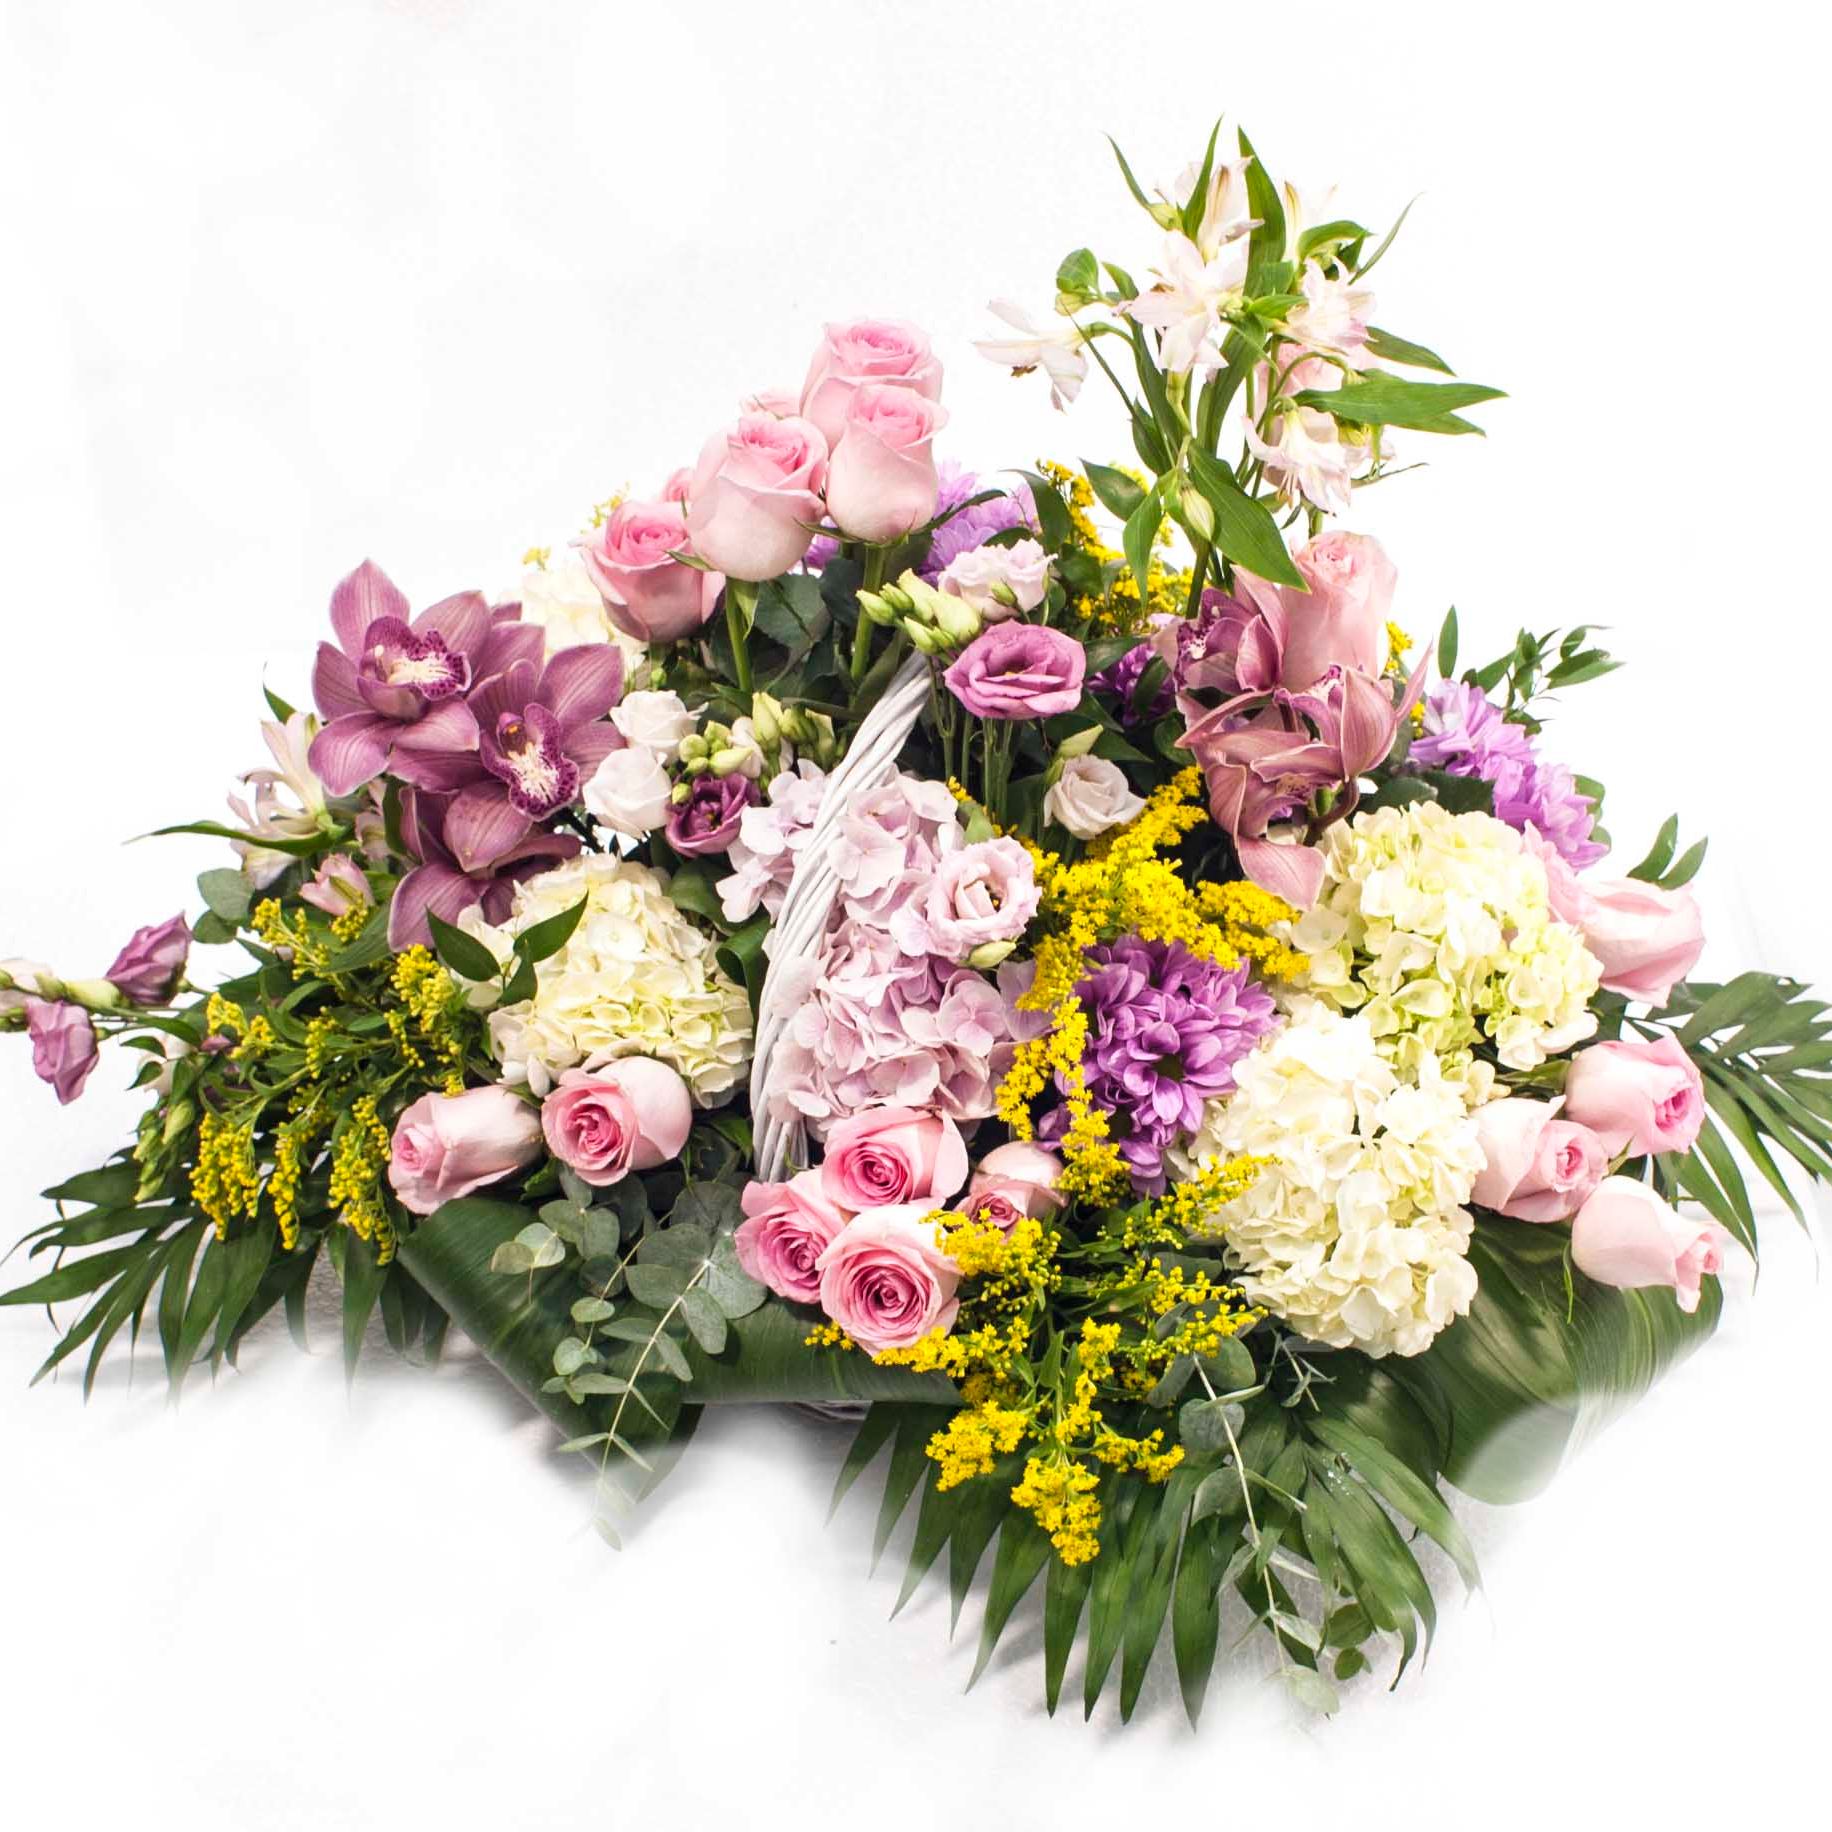  Dreamy Large flowers arrangement